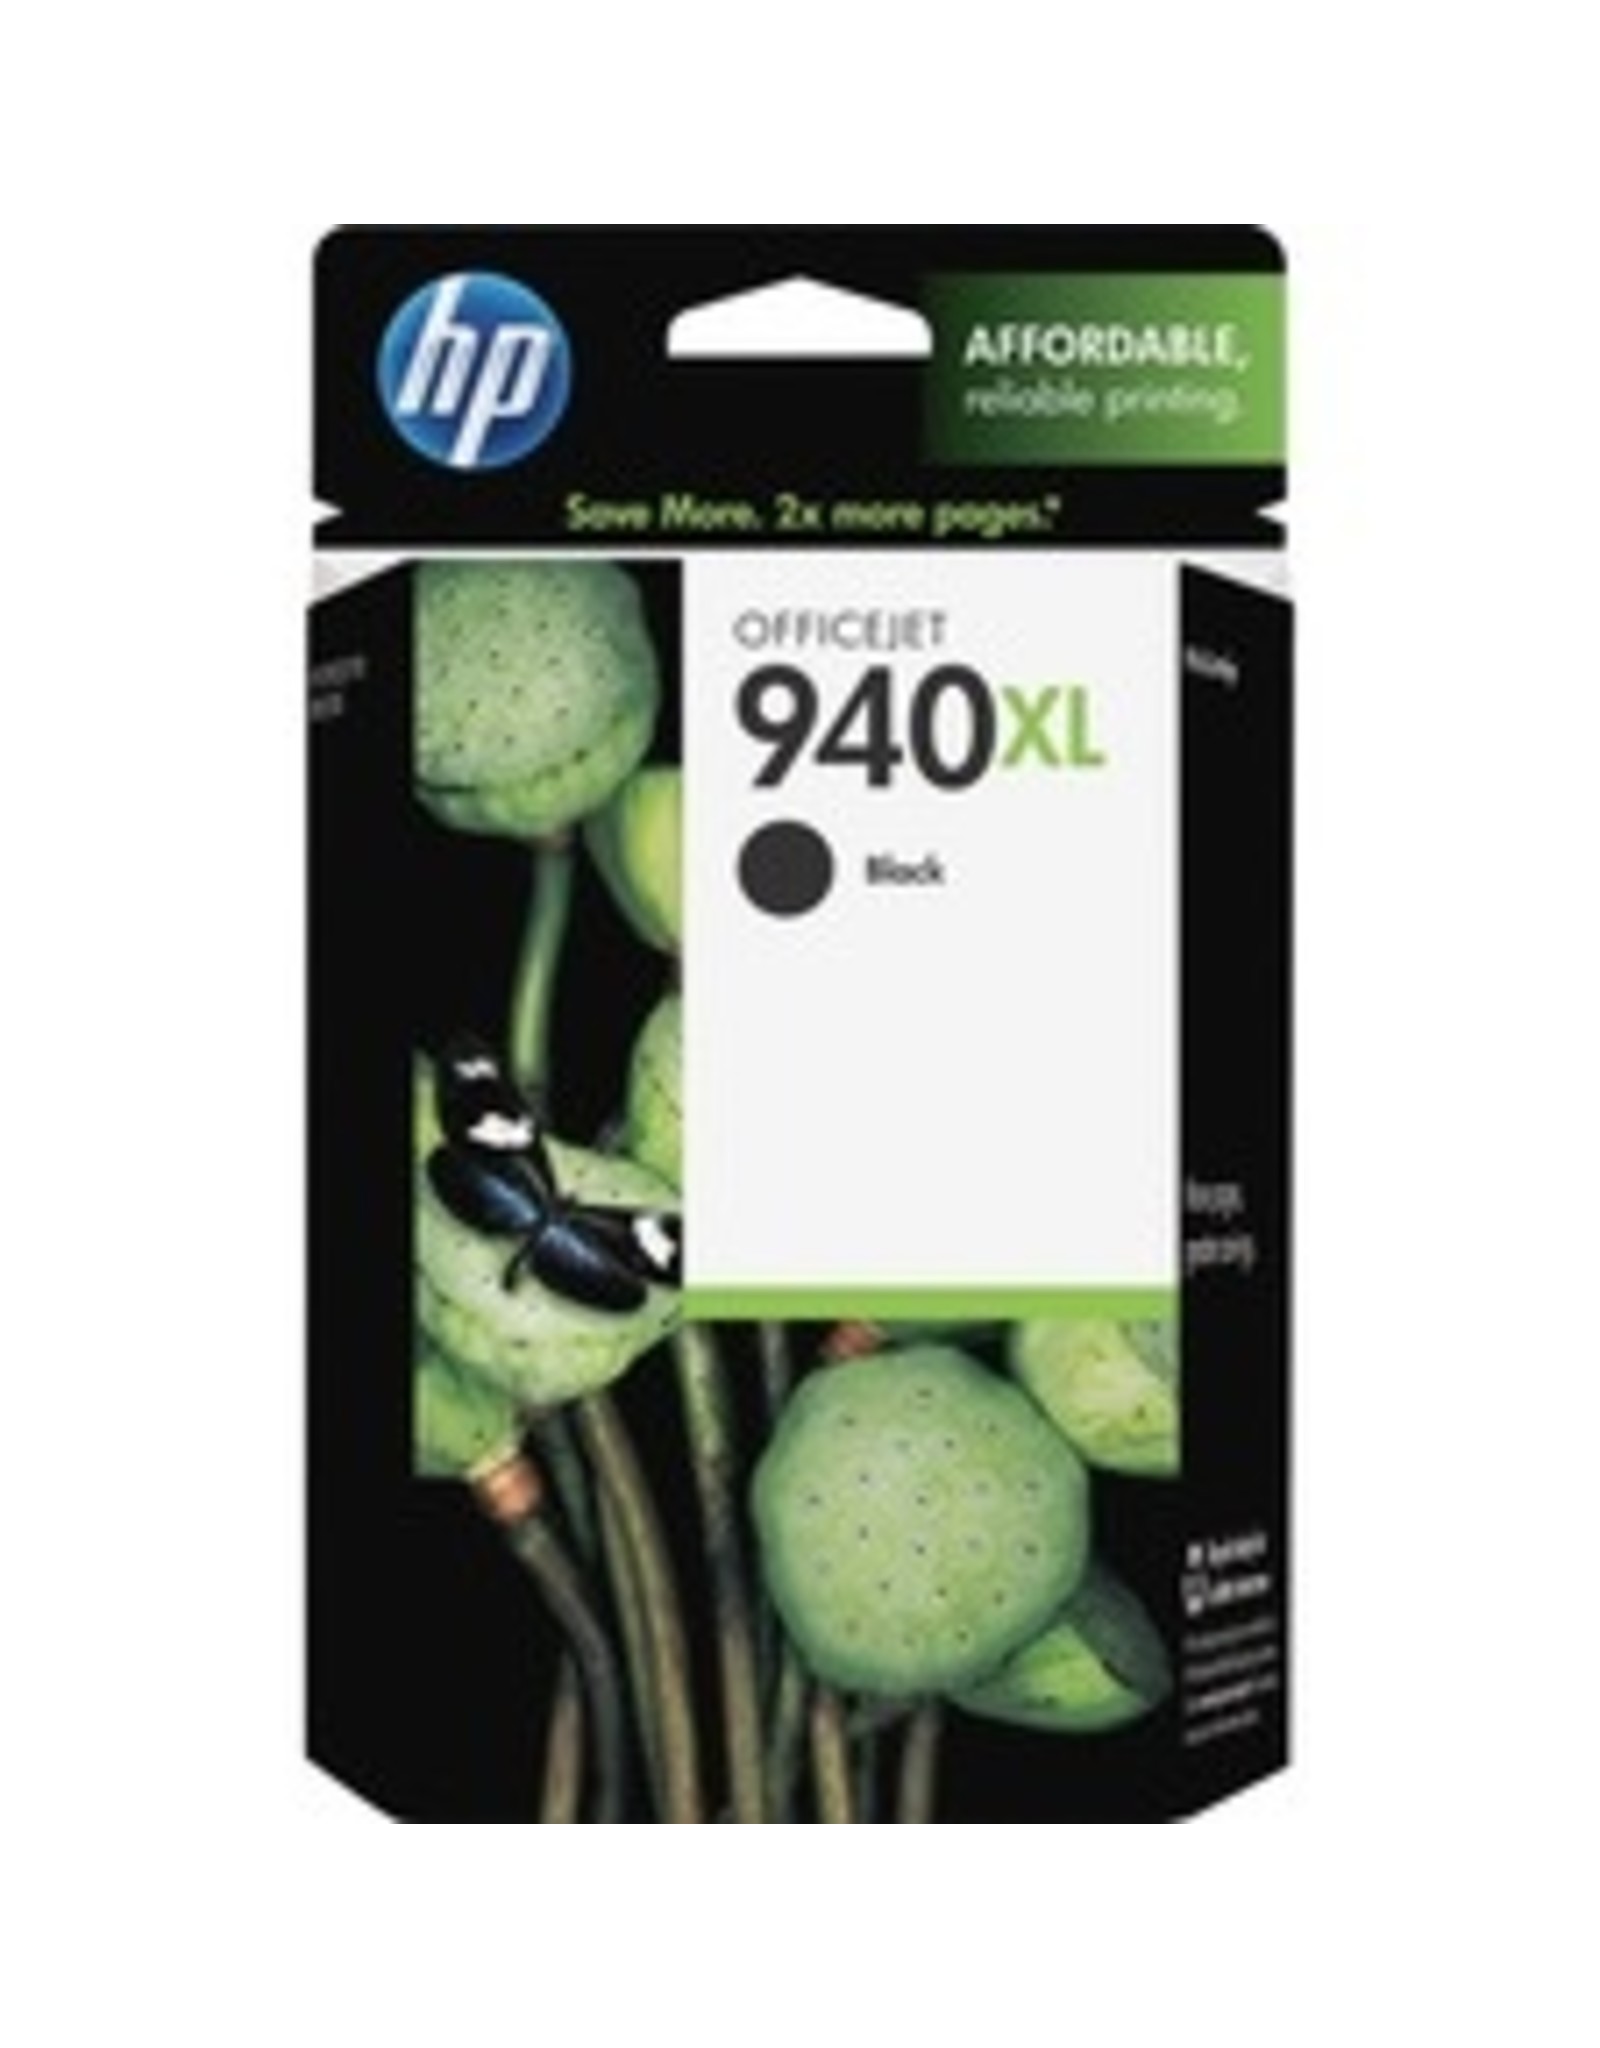 HP HP 940XL Ink Cartridge - Black